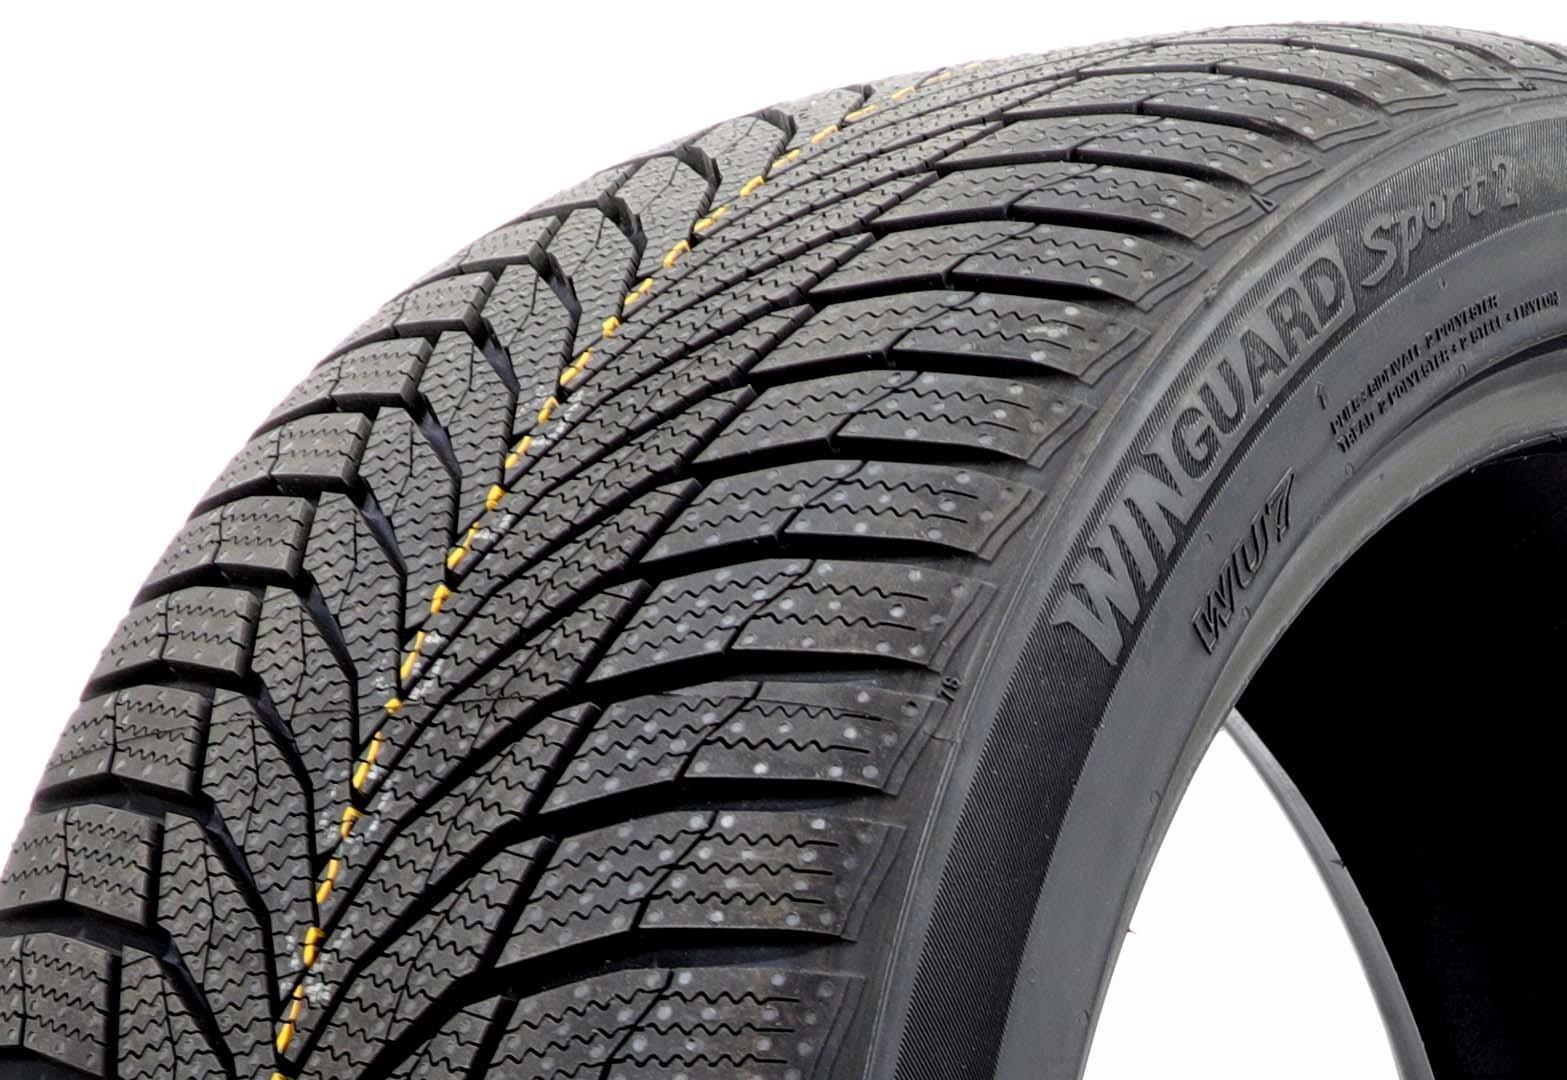 TOP 10 modelos de pneus de verão Nekhen (Nexen) - recursos de borracha com comentários